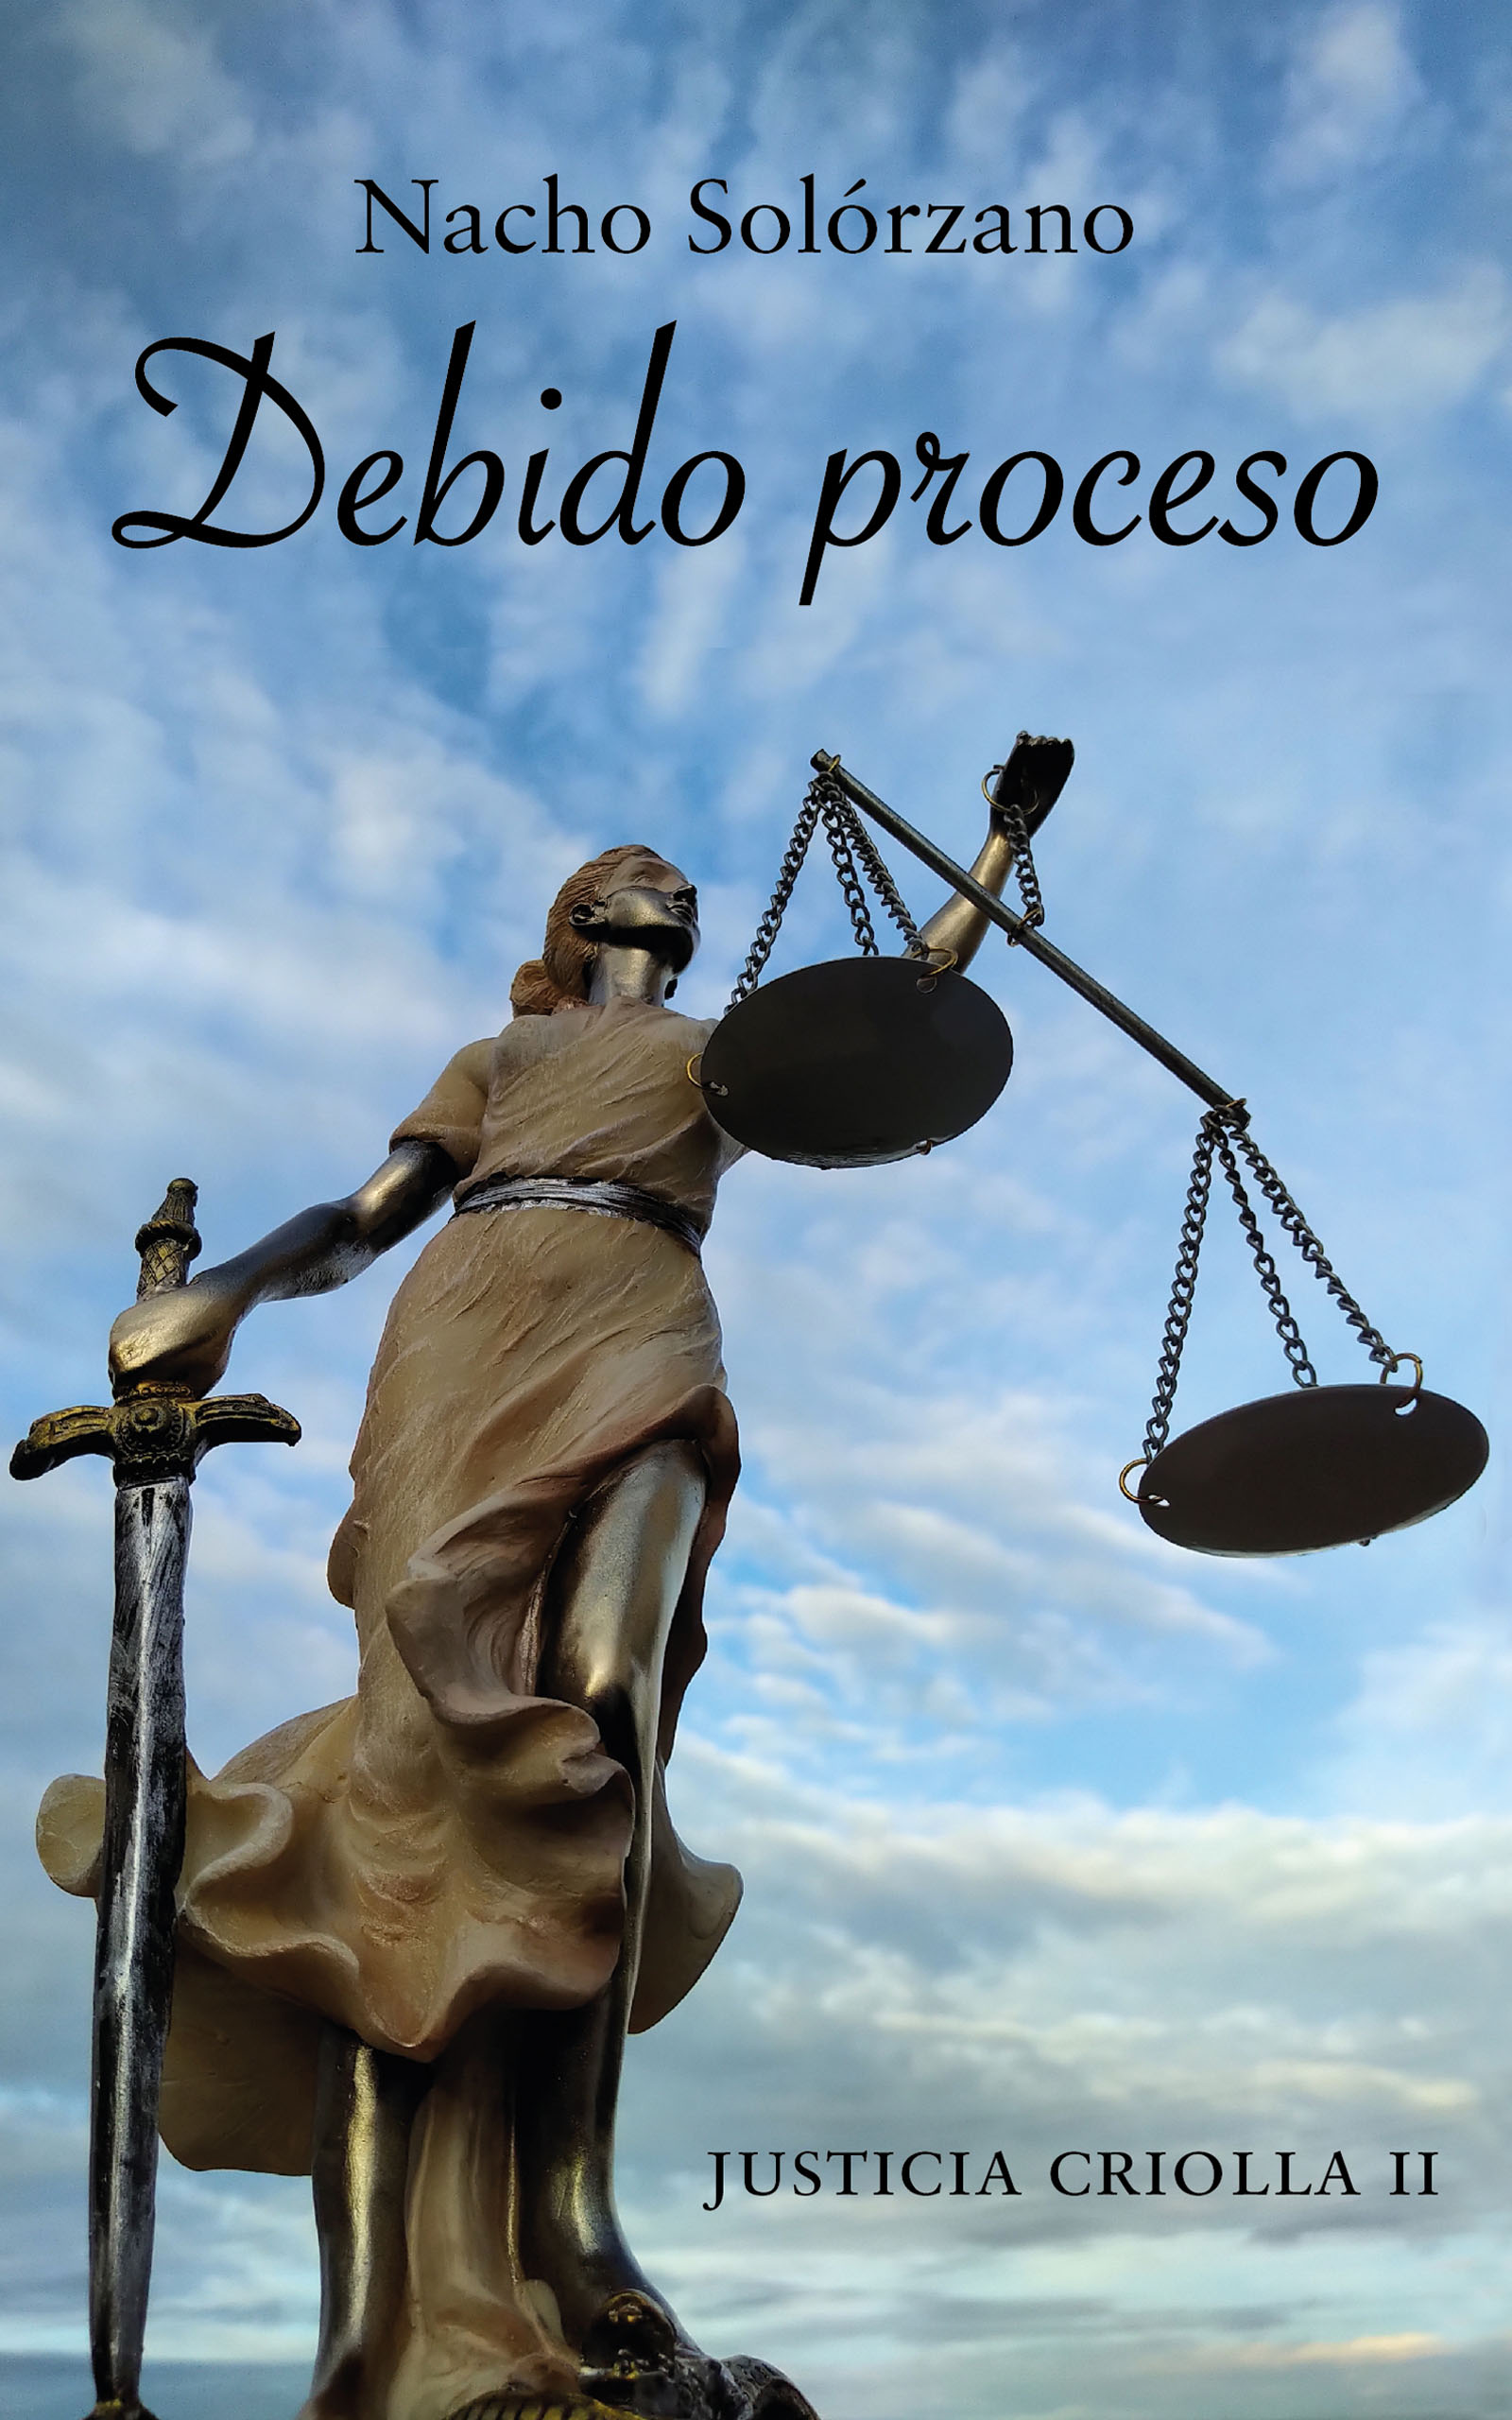 Justicia Criolla: Debido proceso